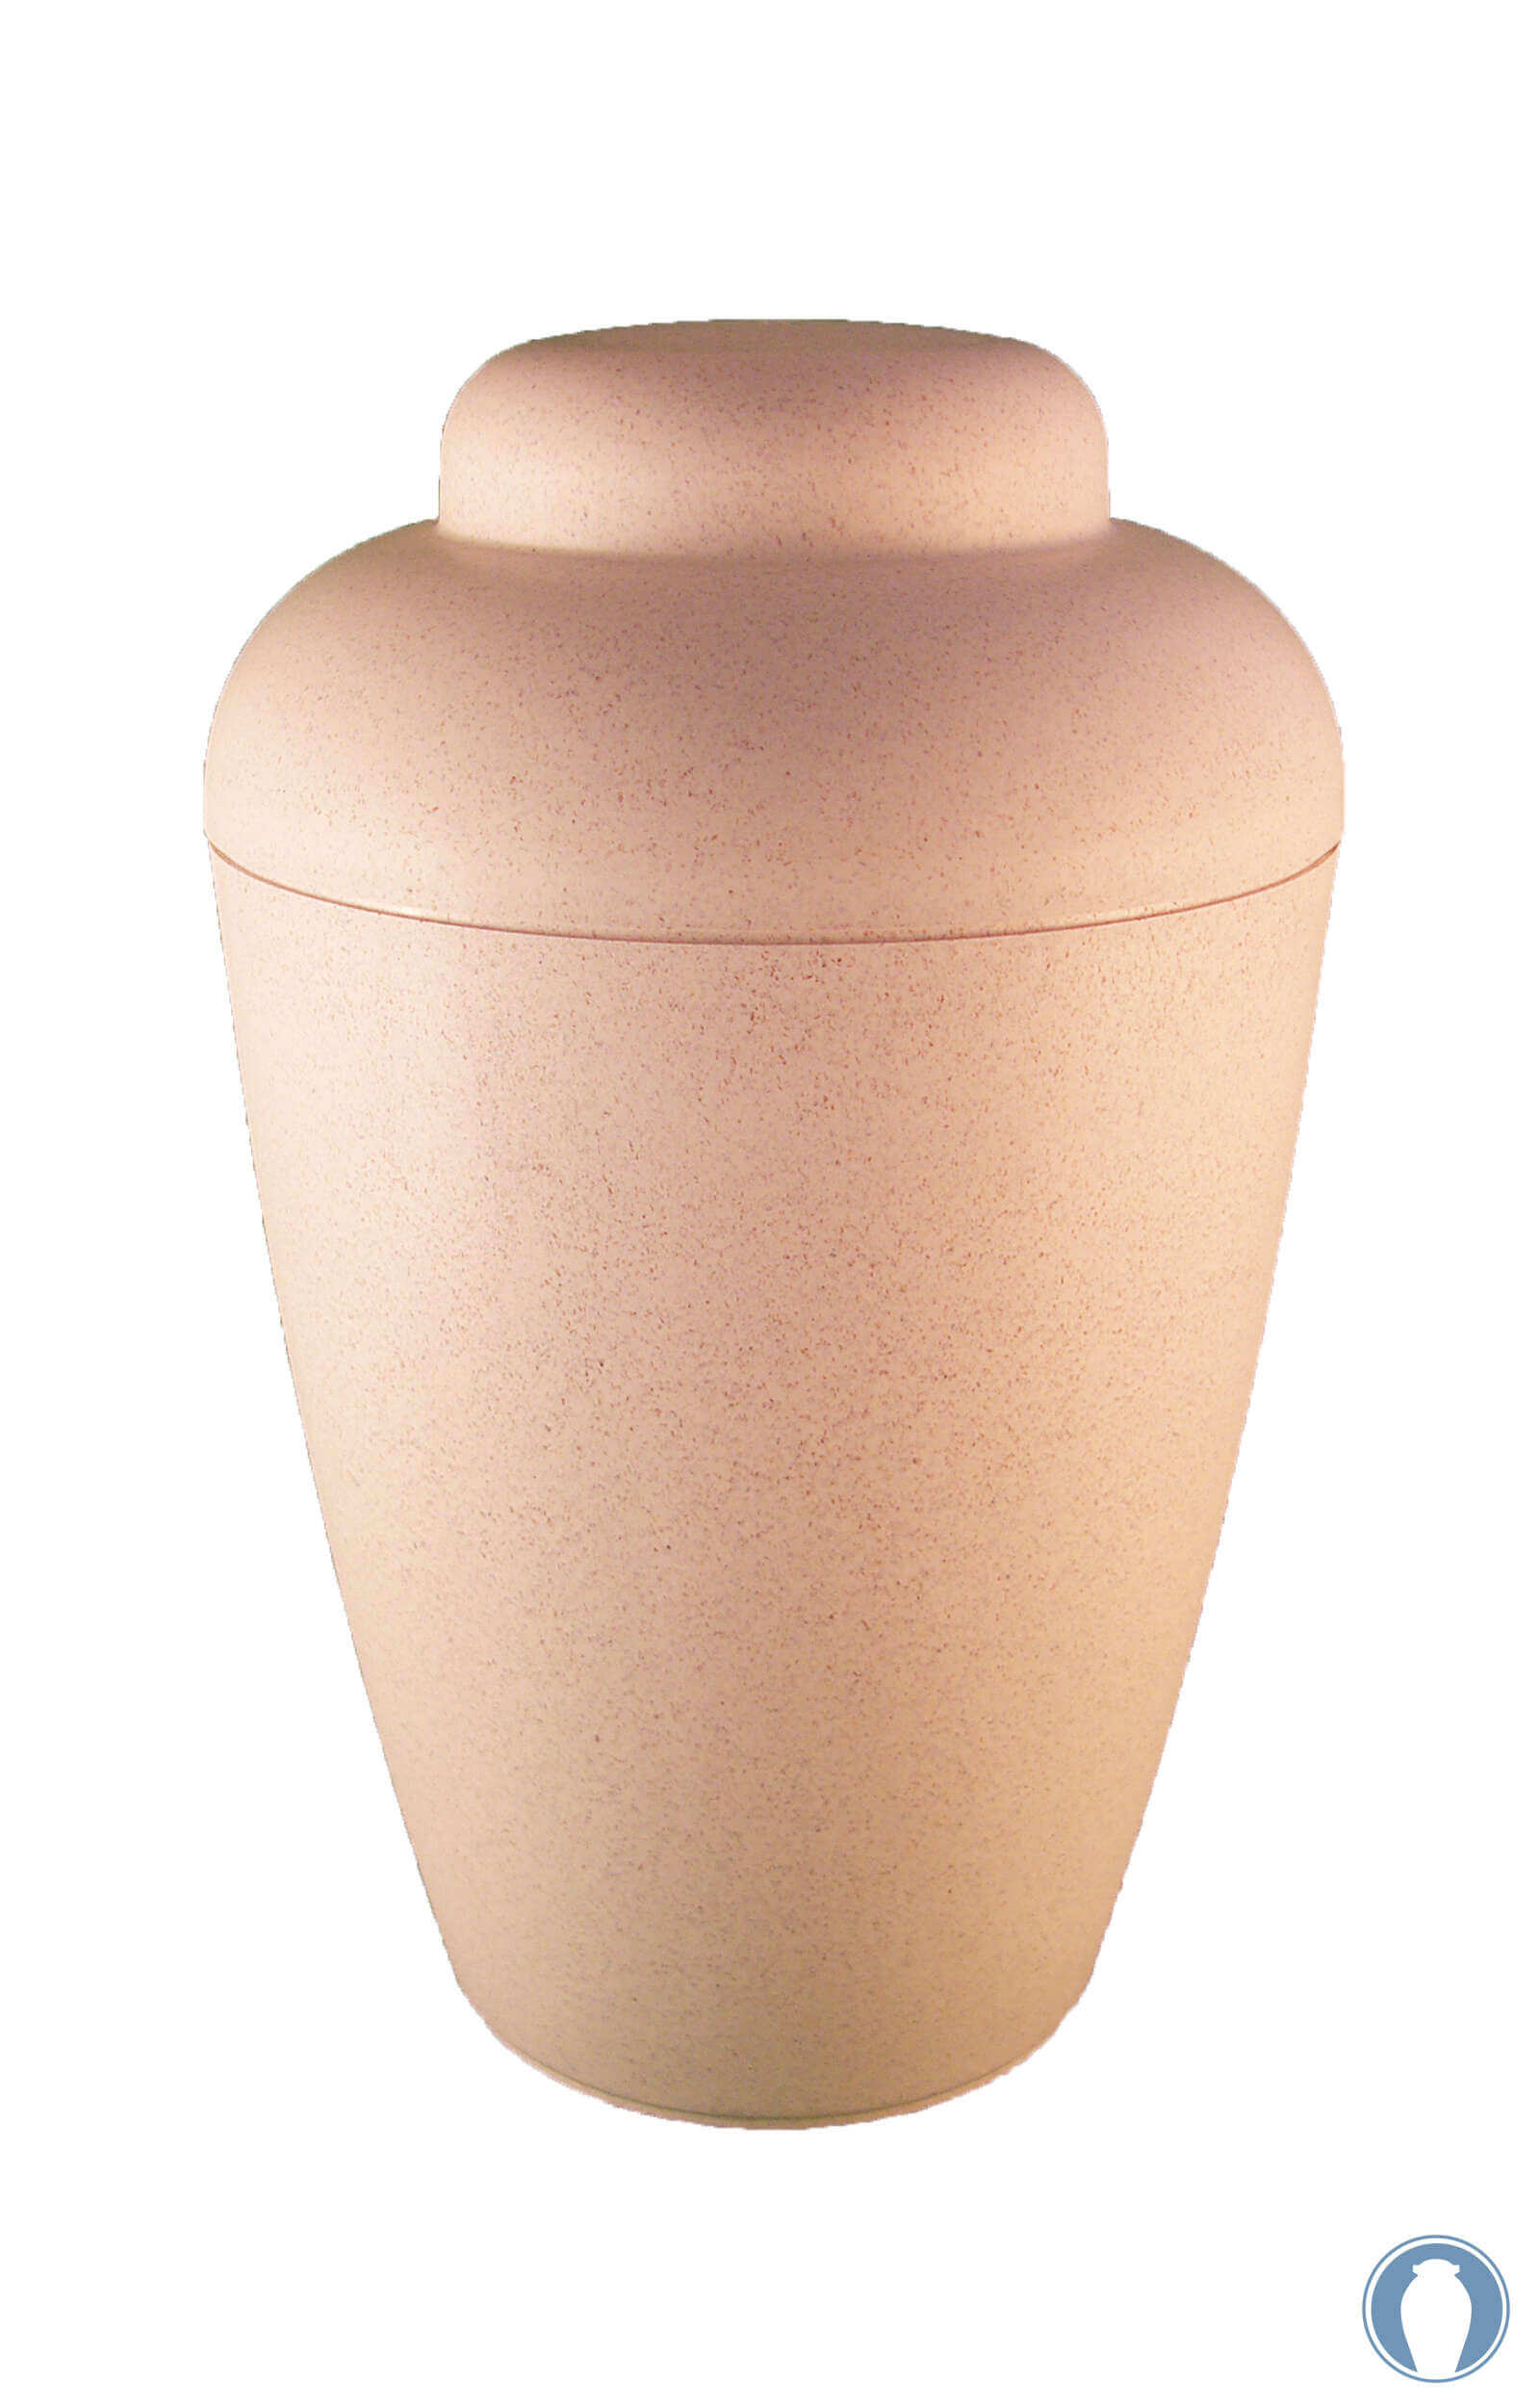 en BVW1402 biodigradable urn vale white funeral urn for human ashes elegant shape